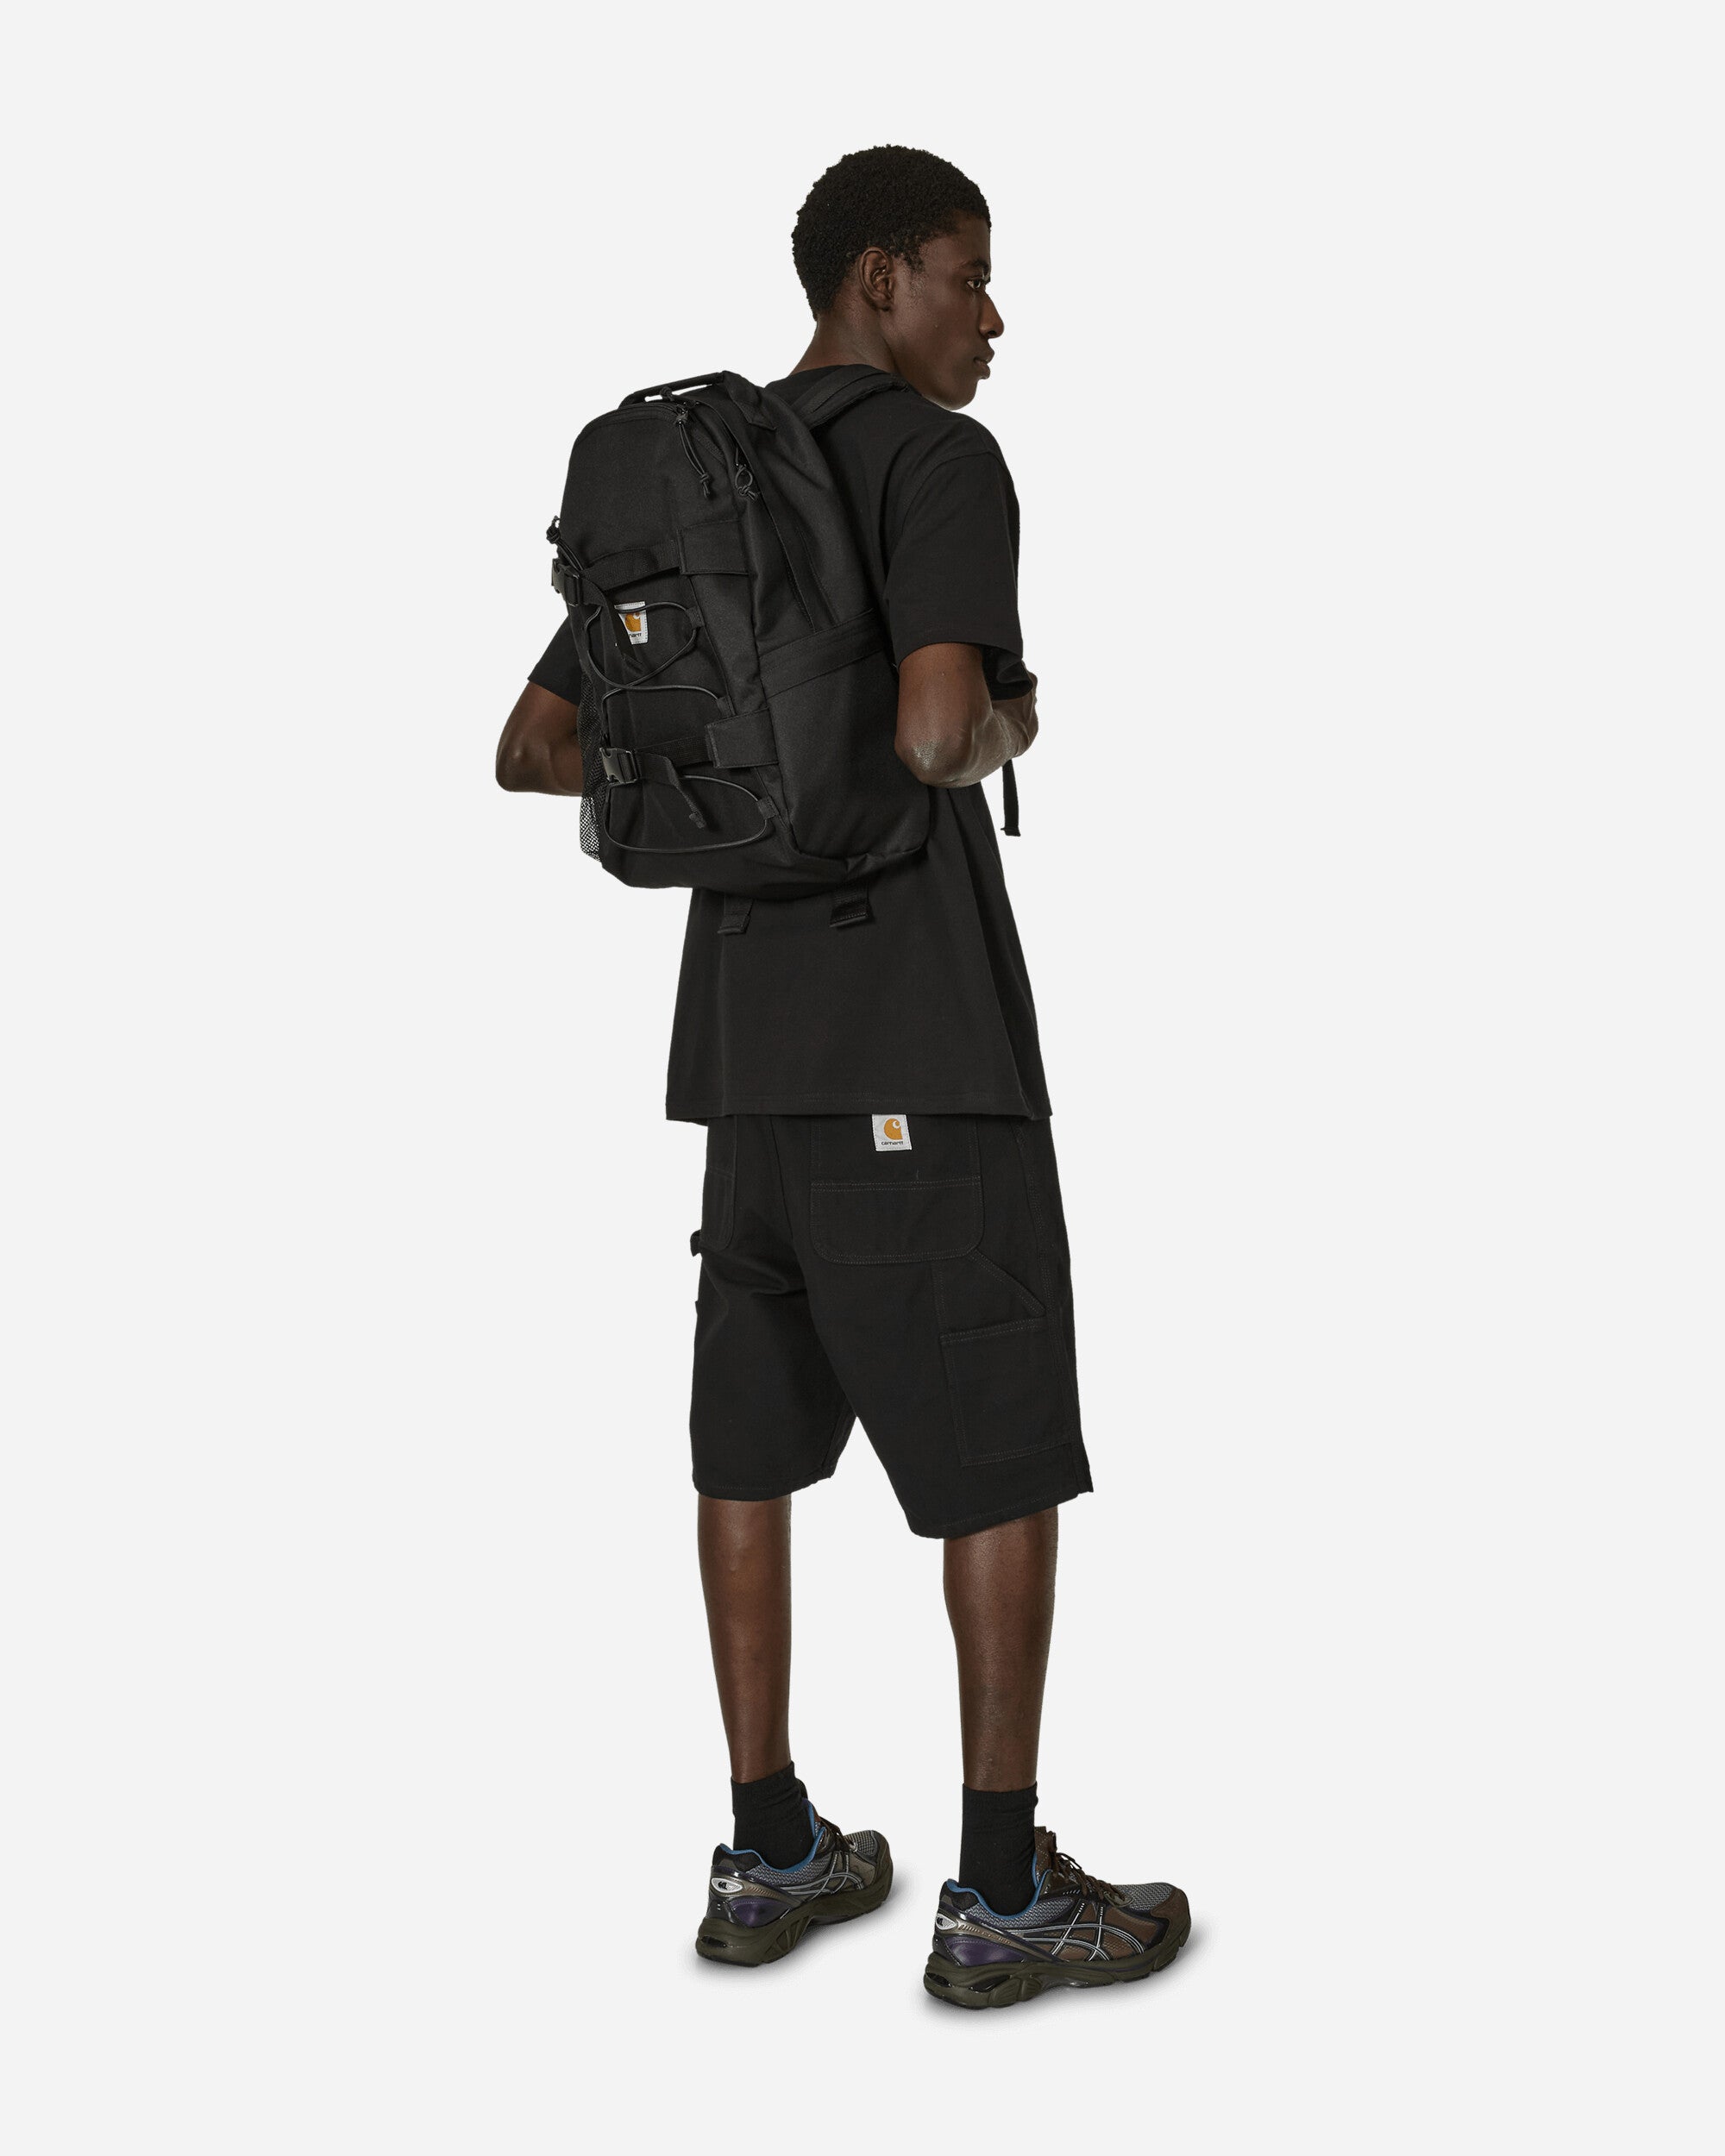 Carhartt WIP Kickflip Backpack Black Bags and Backpacks Backpacks I031468 89XX